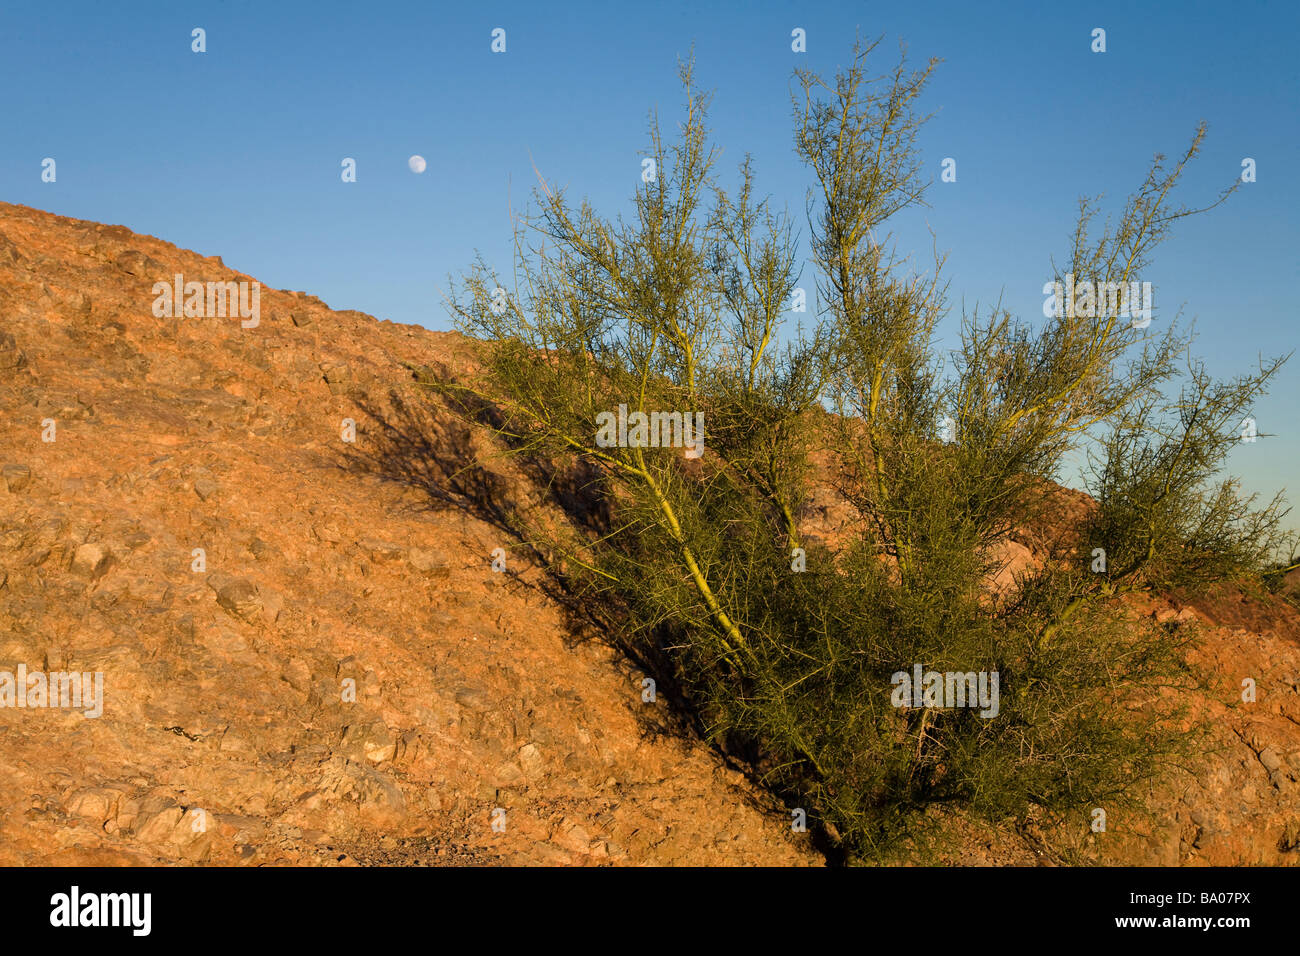 Palo verde tree in Papago City Park Phoenix Arizona Stock Photo